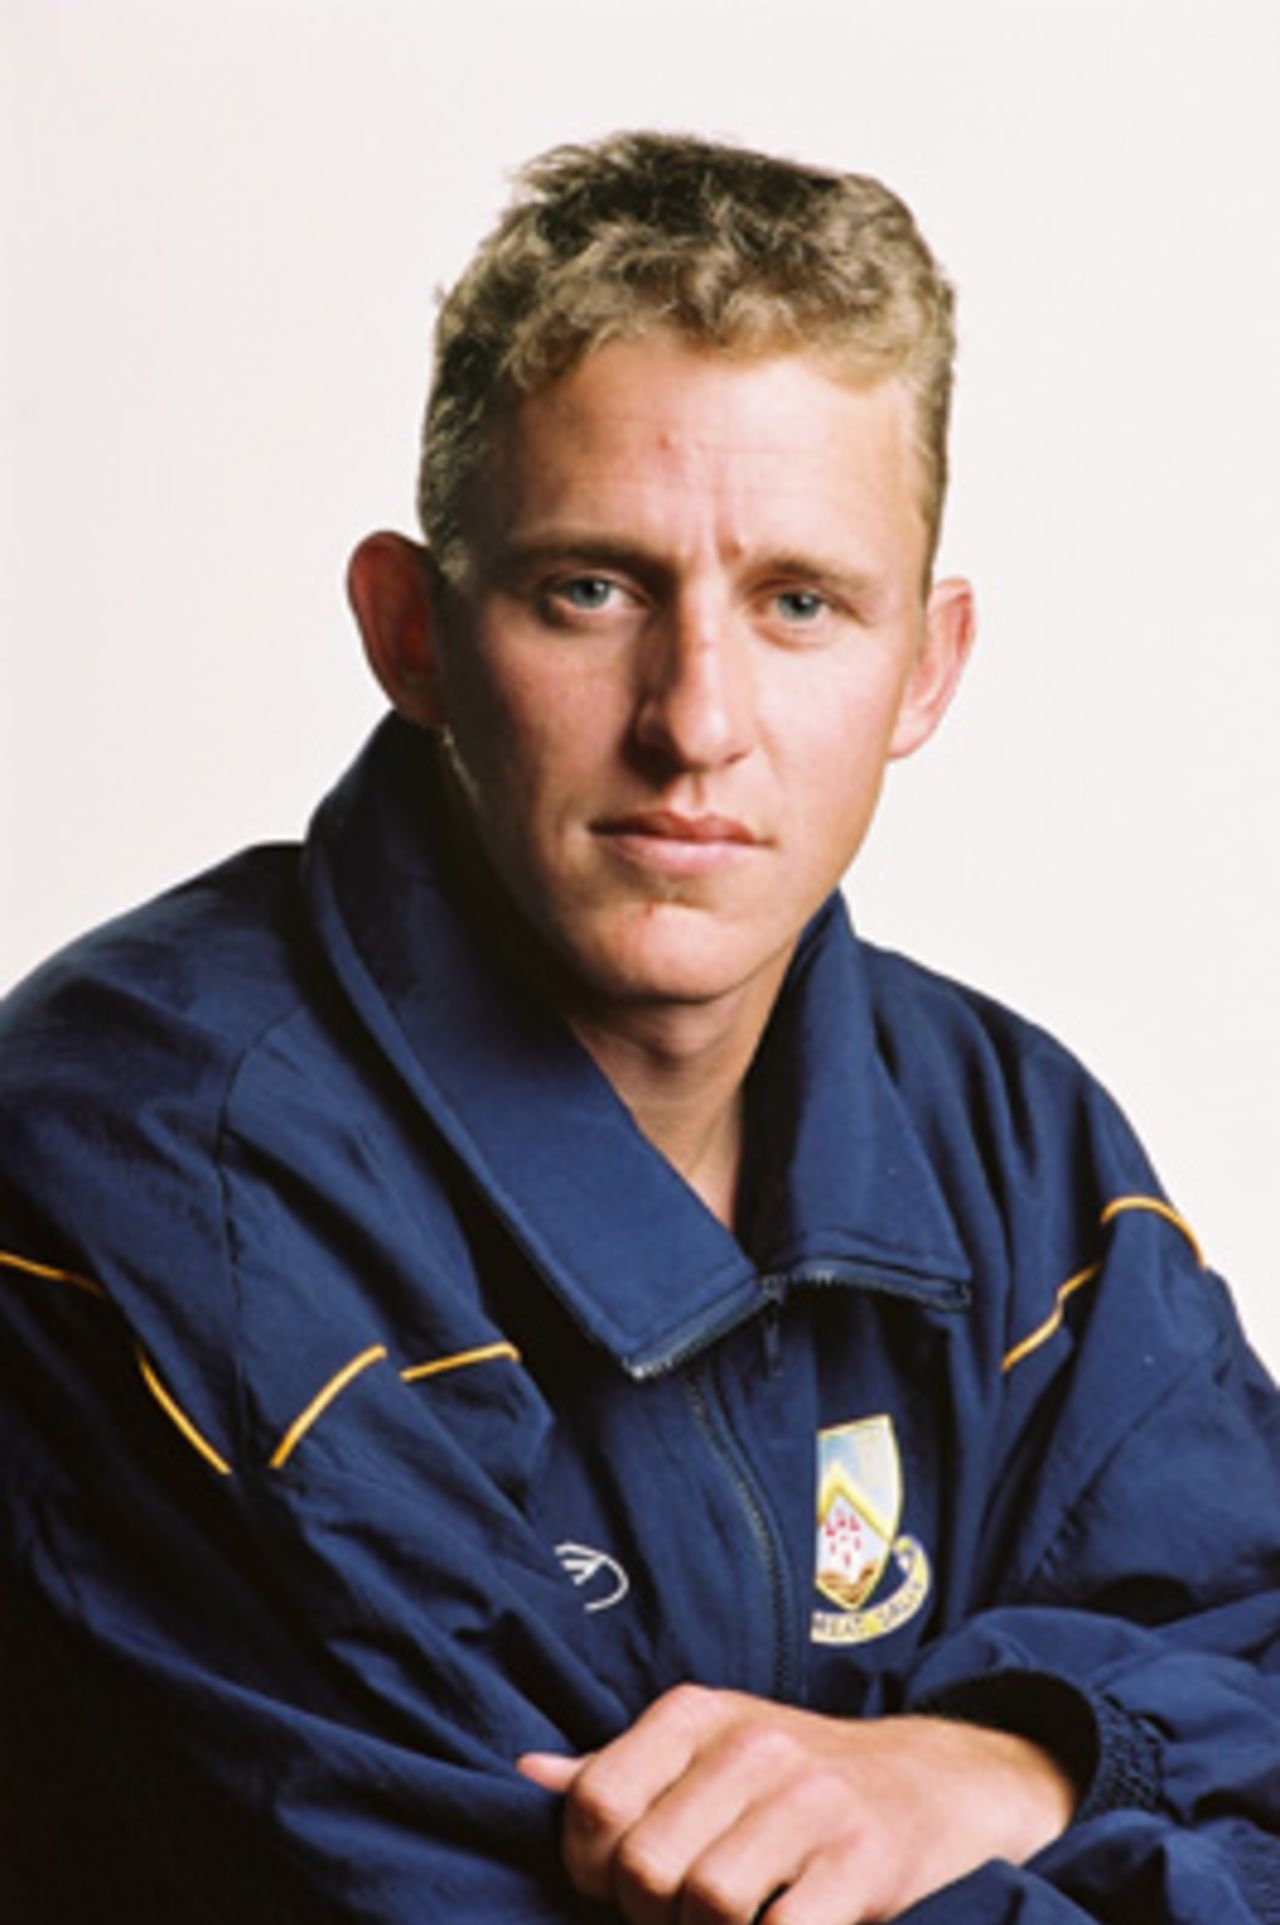 Portrait of Craig Cumming - Otago squad member for the 2000/01 season